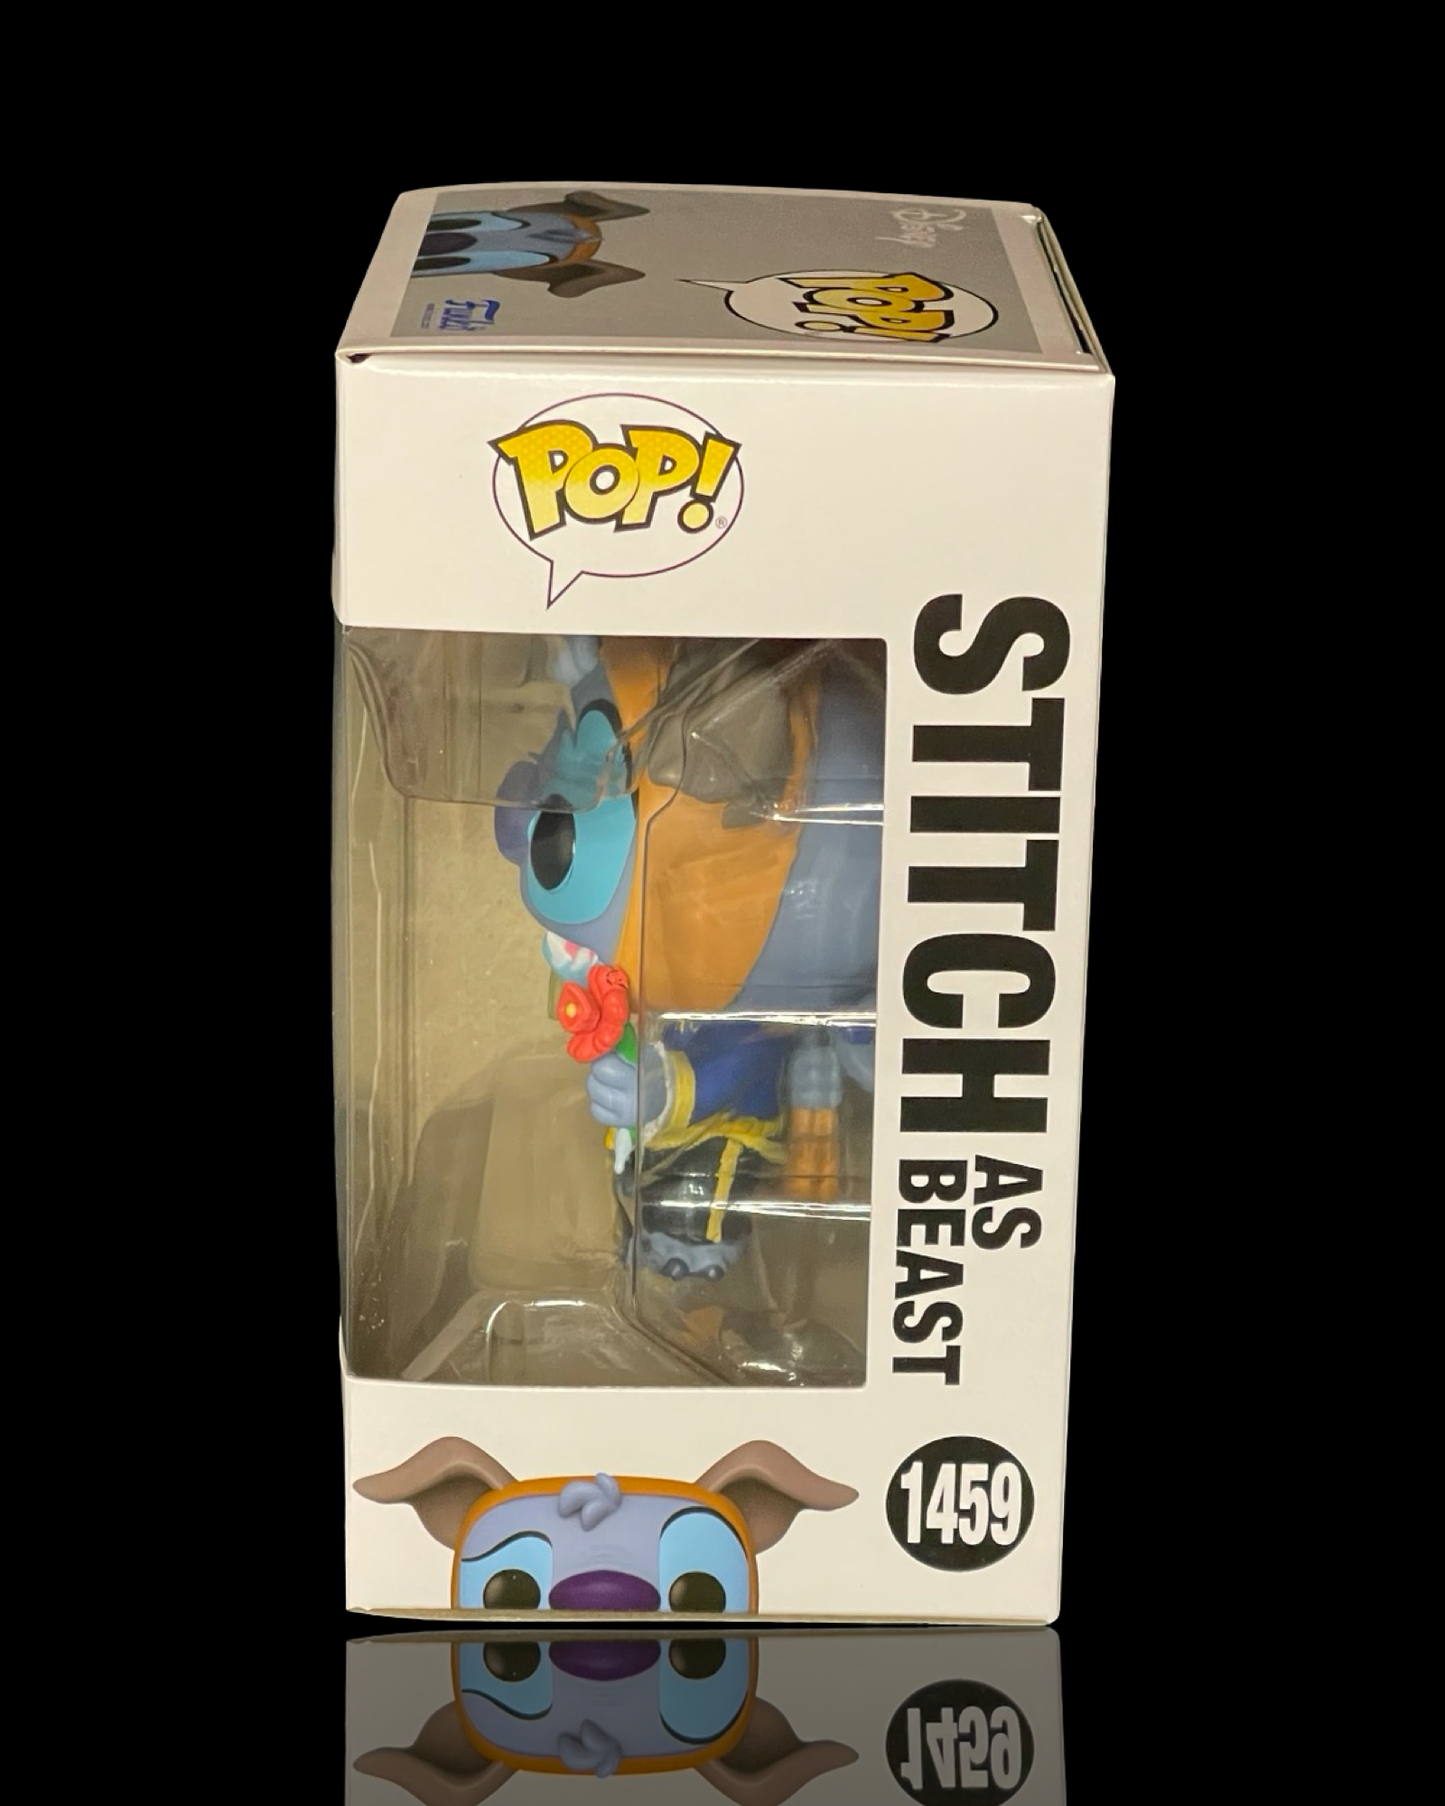 Stitch in Costume: Stitch as Beast